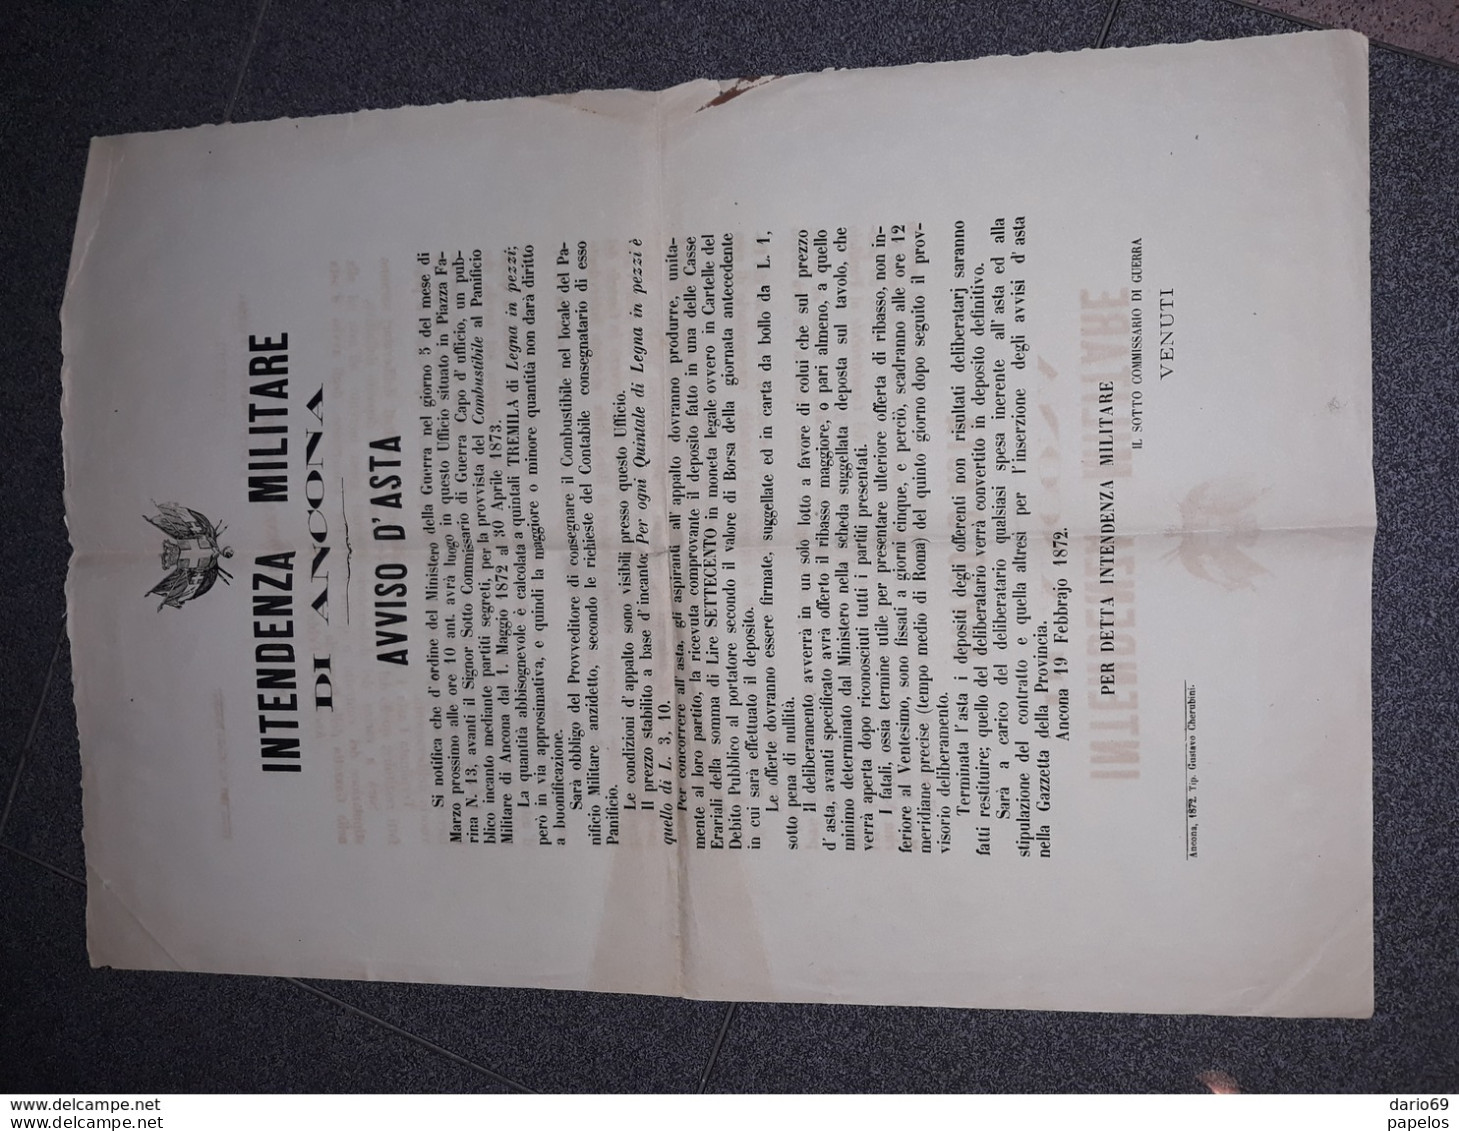 1872  MANIFESTO  INTENDENZA MILITARE DI ANCONA  AVVISO D'ASTA  PER IL COMBUSTIBILE AL PANIFICIO MILITARE - Historical Documents